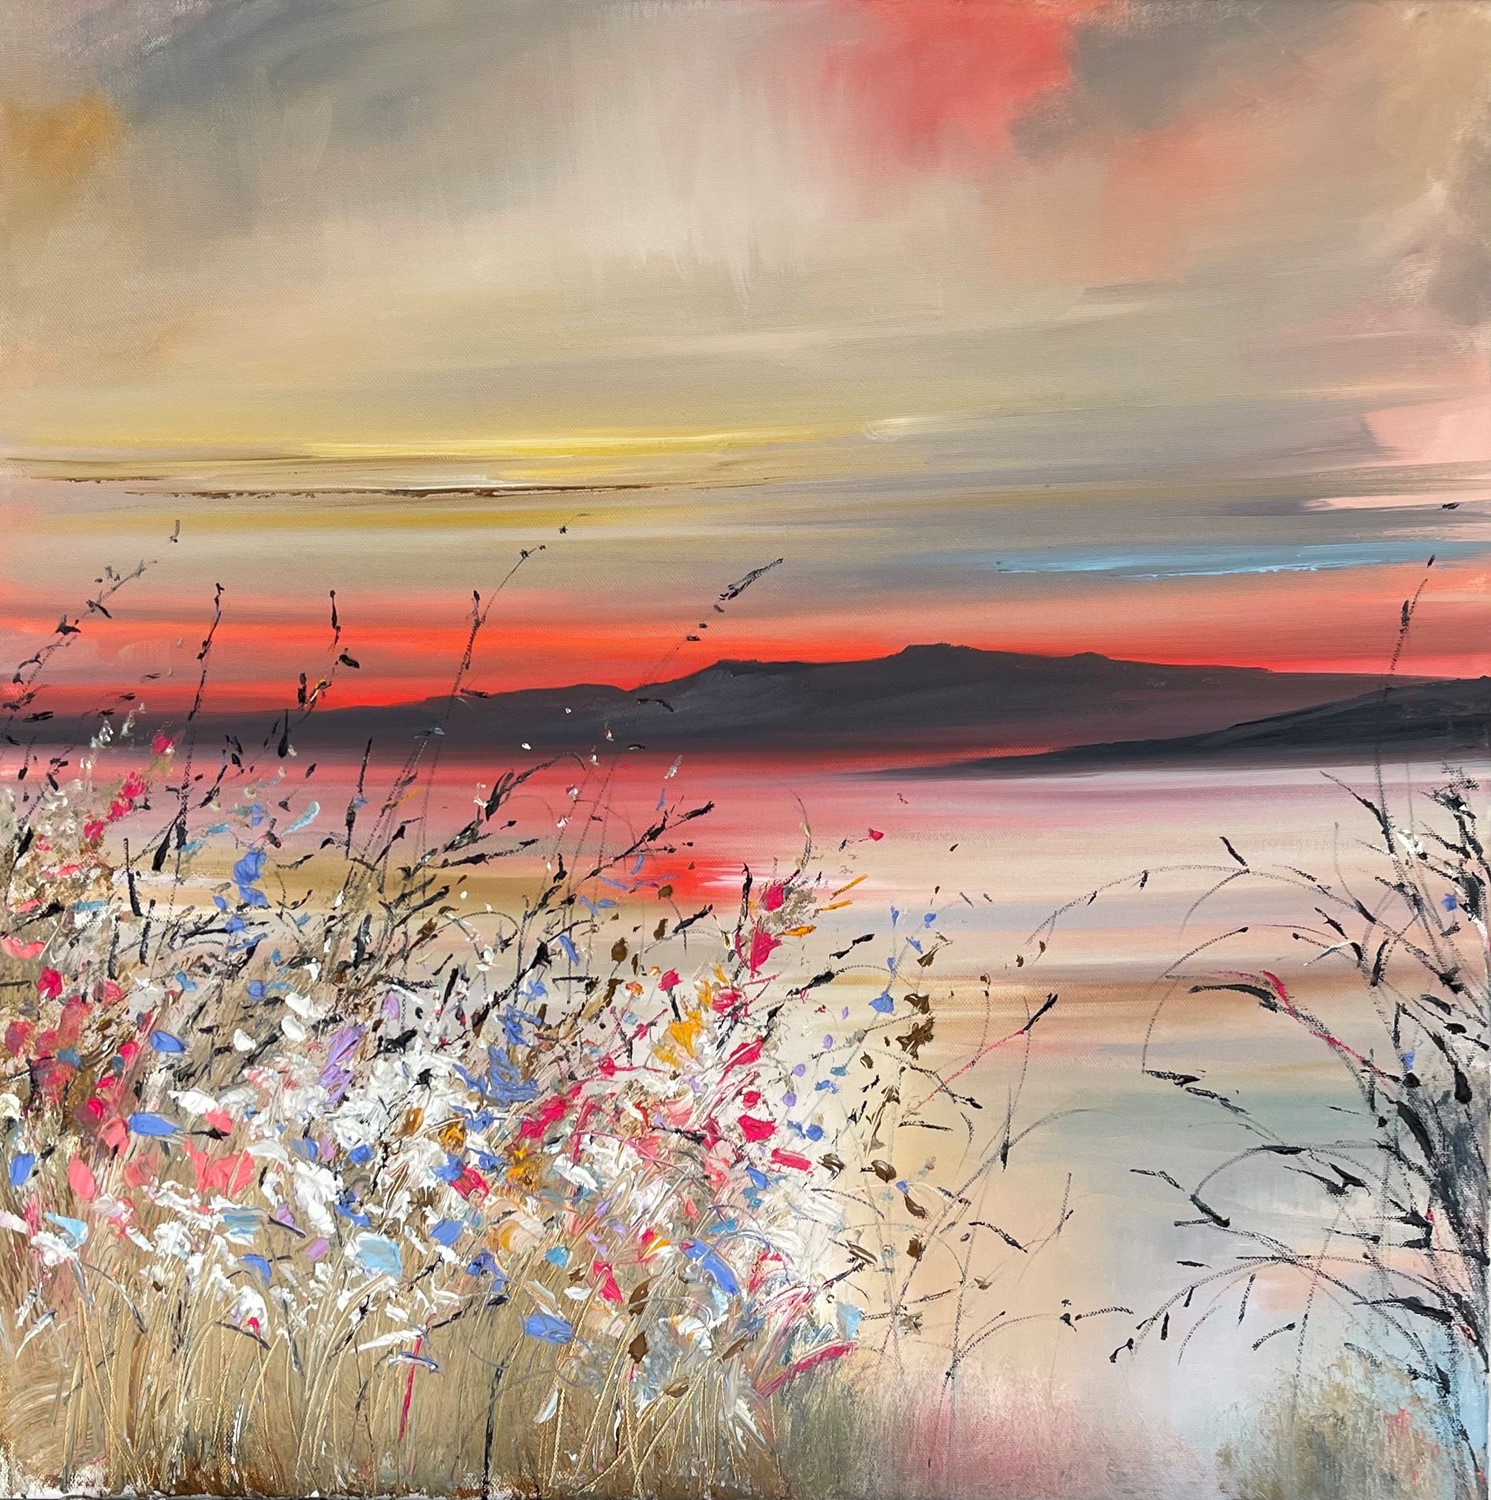 'Summer sunset florals' by artist Rosanne Barr